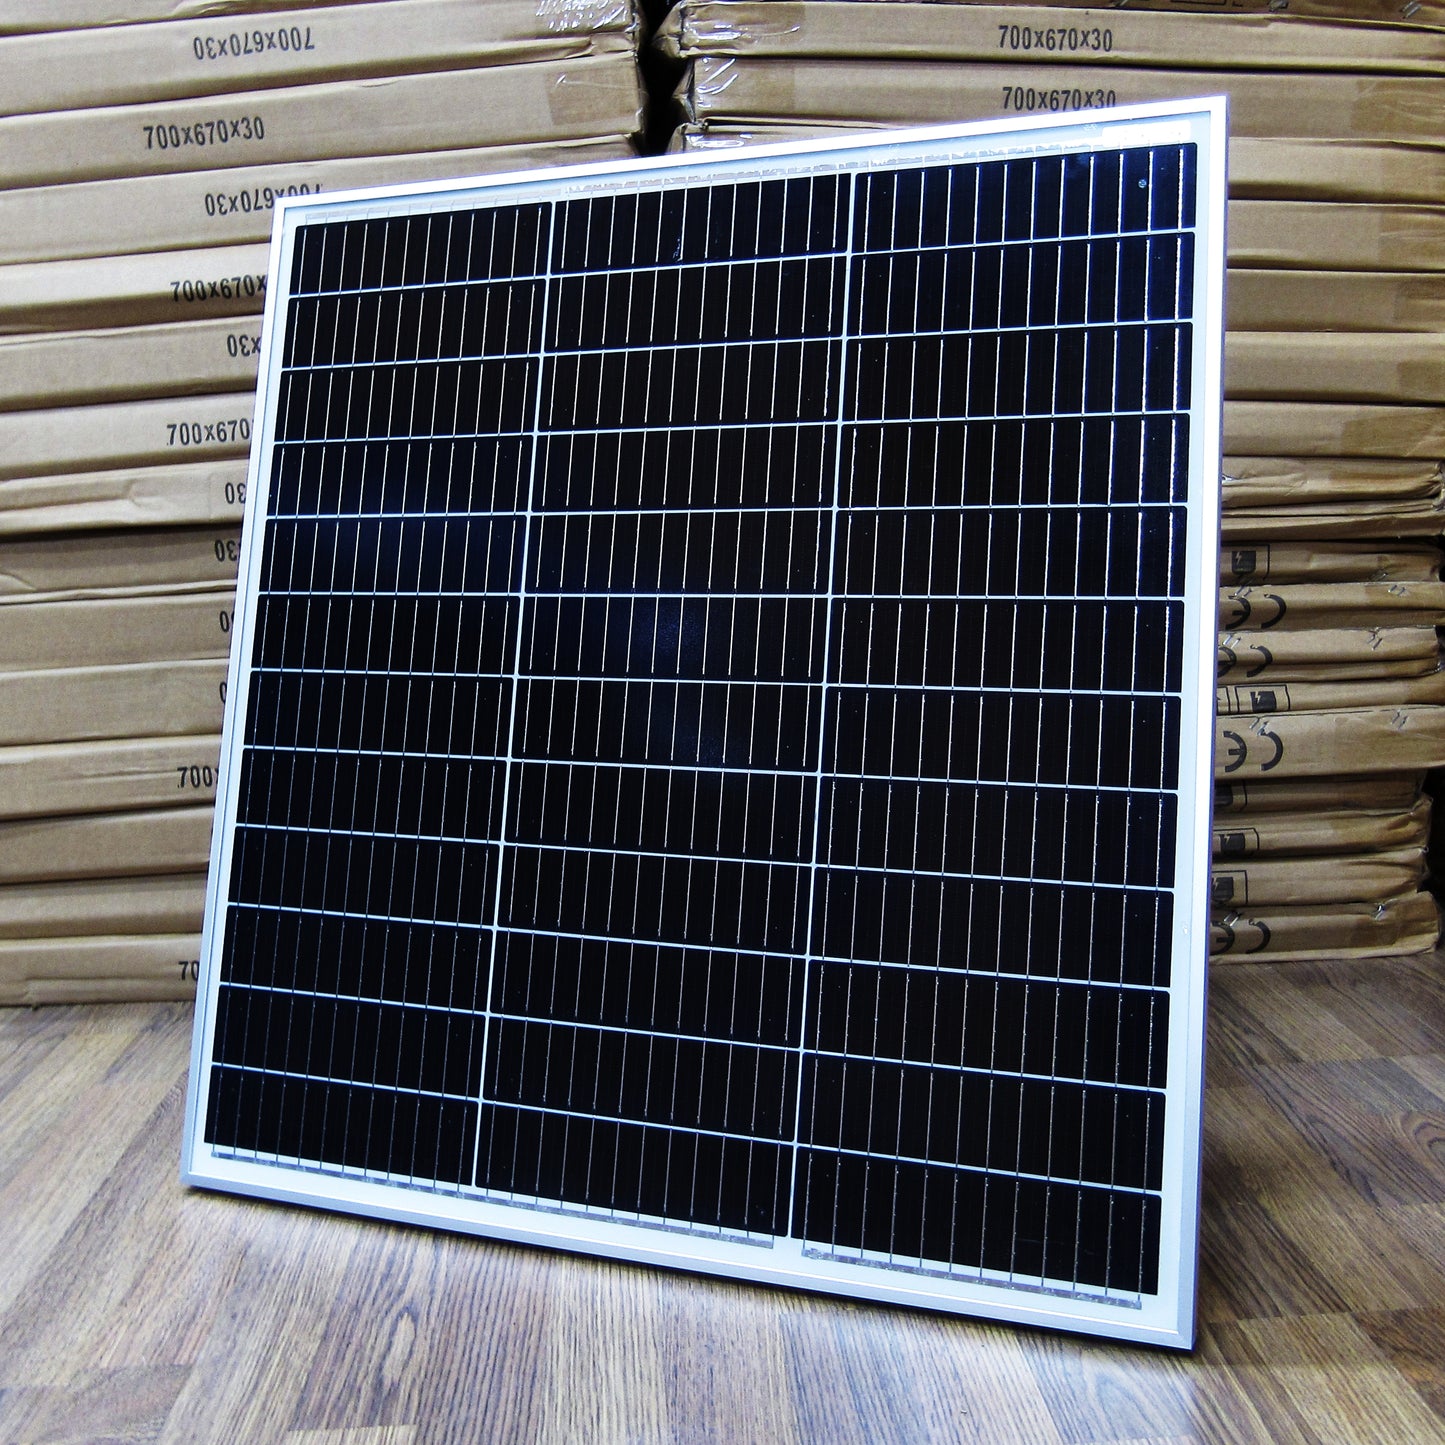 Solar Scout 200watt Monocrystalline Solar Panel Kit